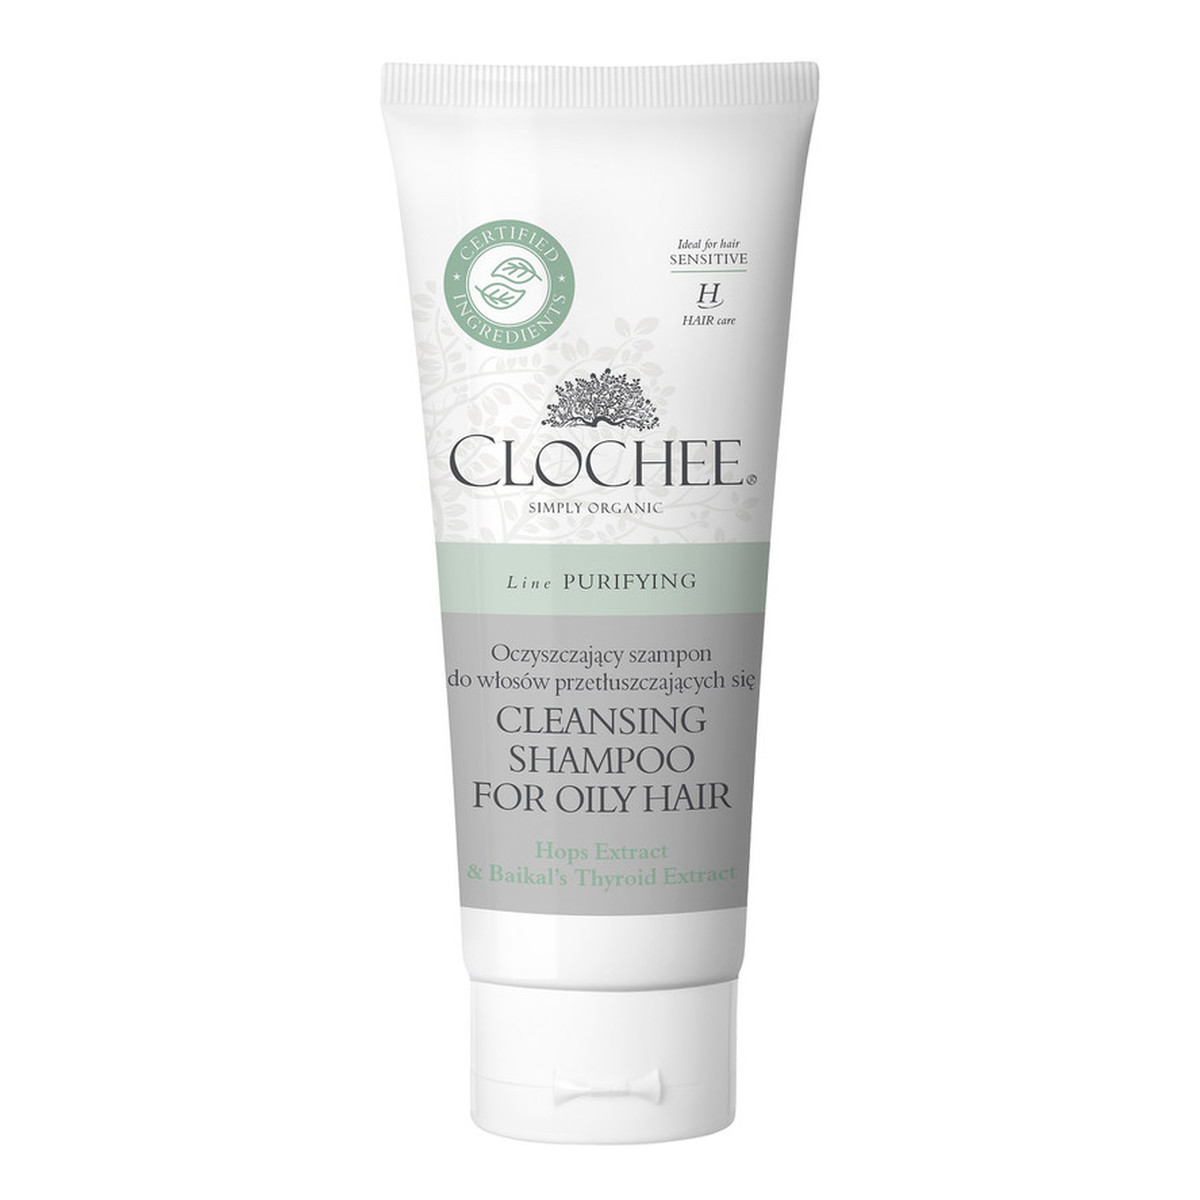 Clochee Oczyszczający szampon do włosów przetłuszczających się. 100ml